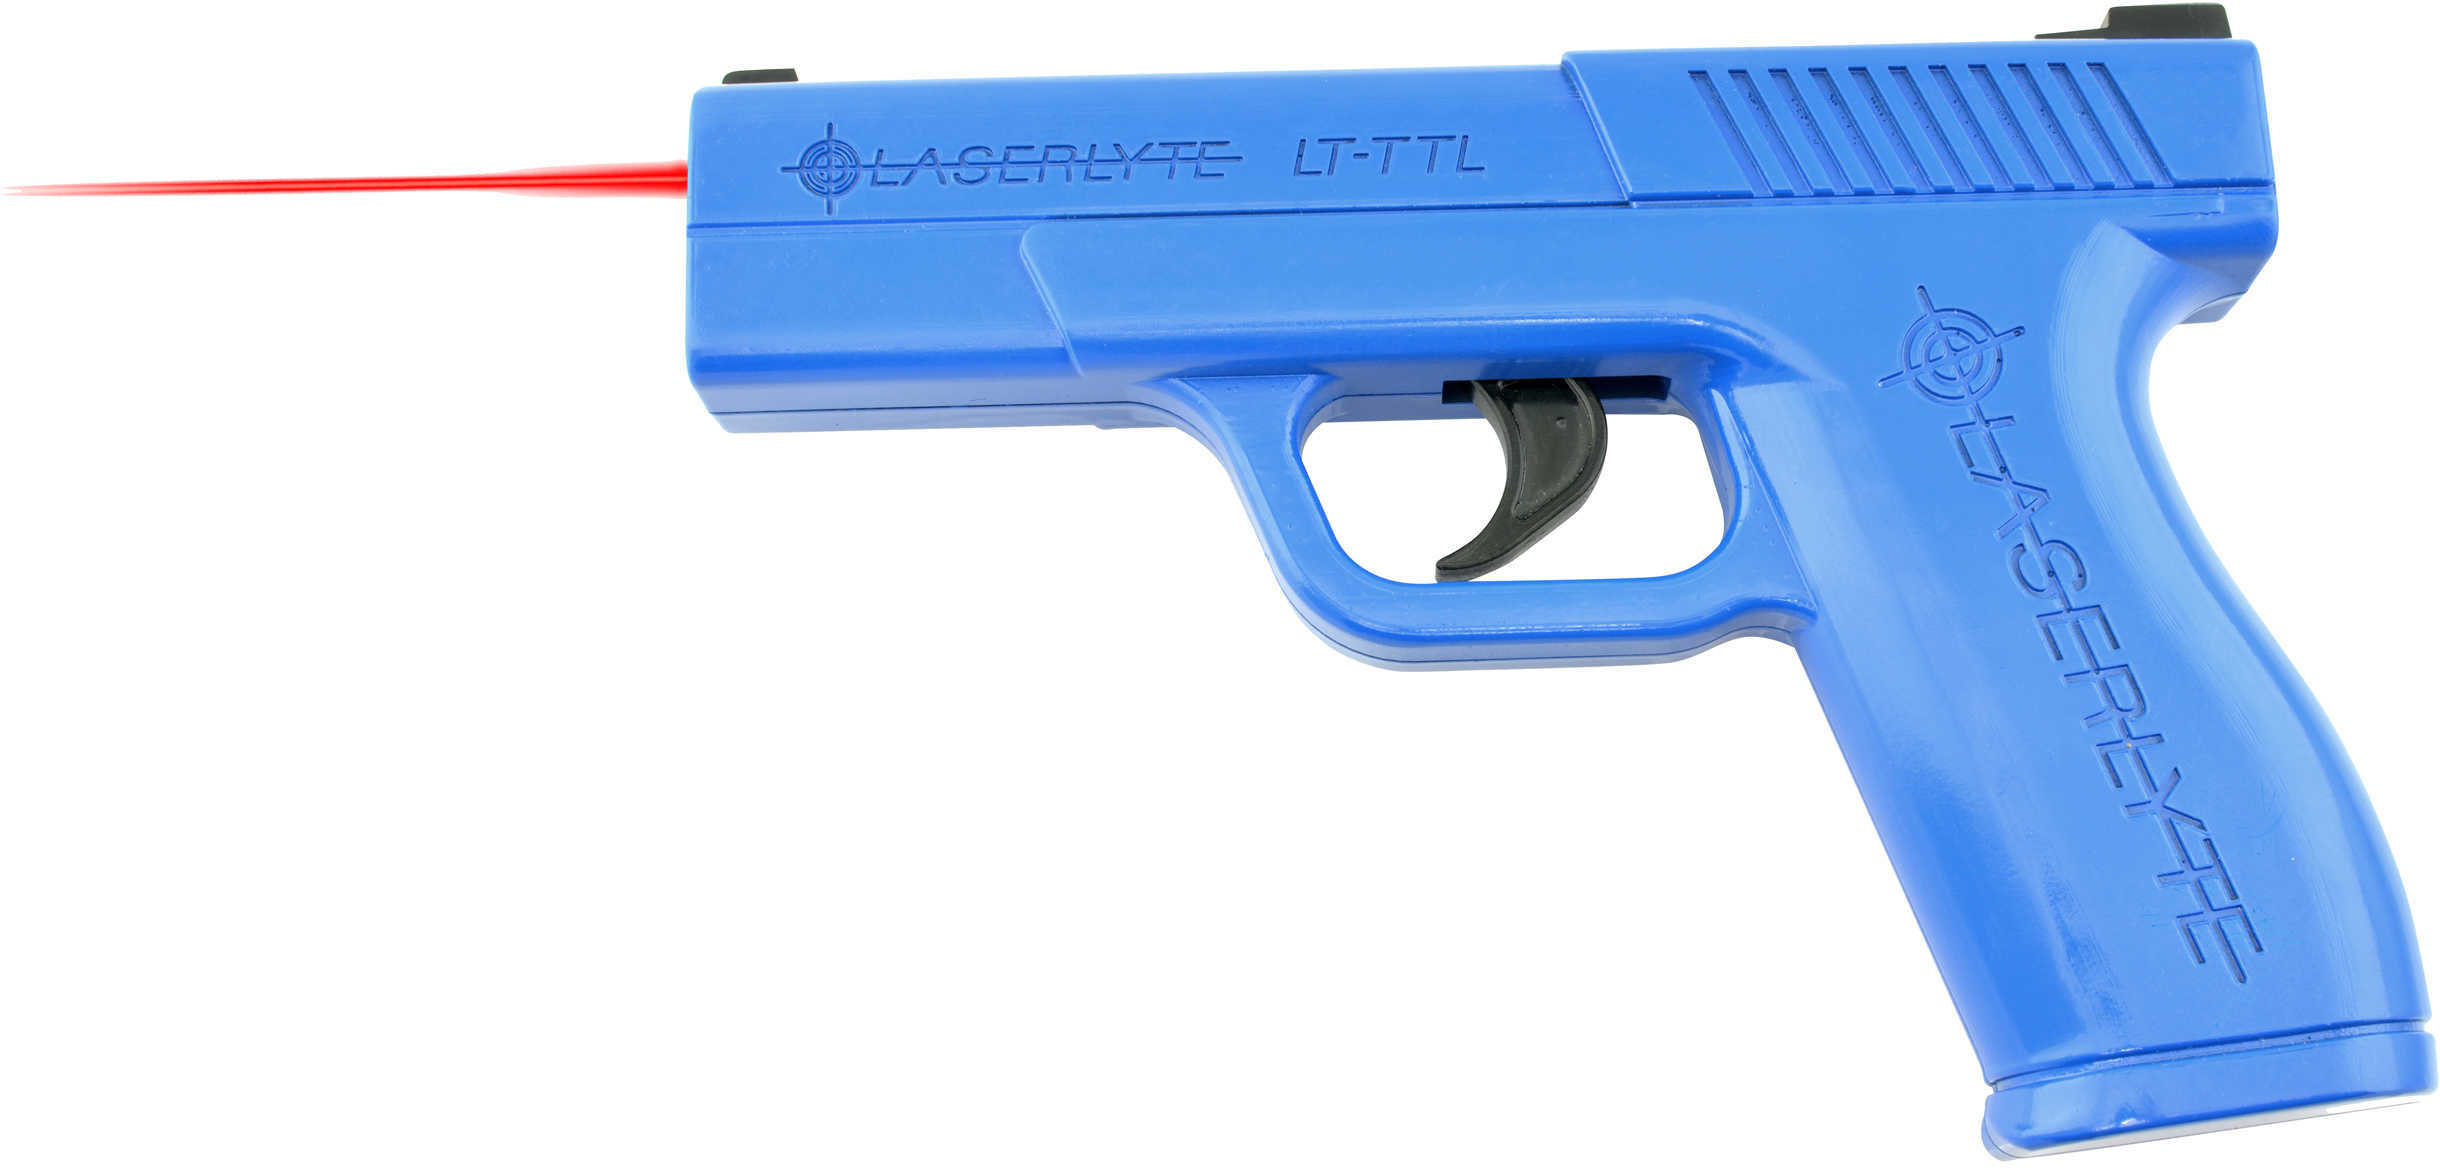 Laserlyte LTTTL Trigger Tyme for Glock 19 Simulator Blue